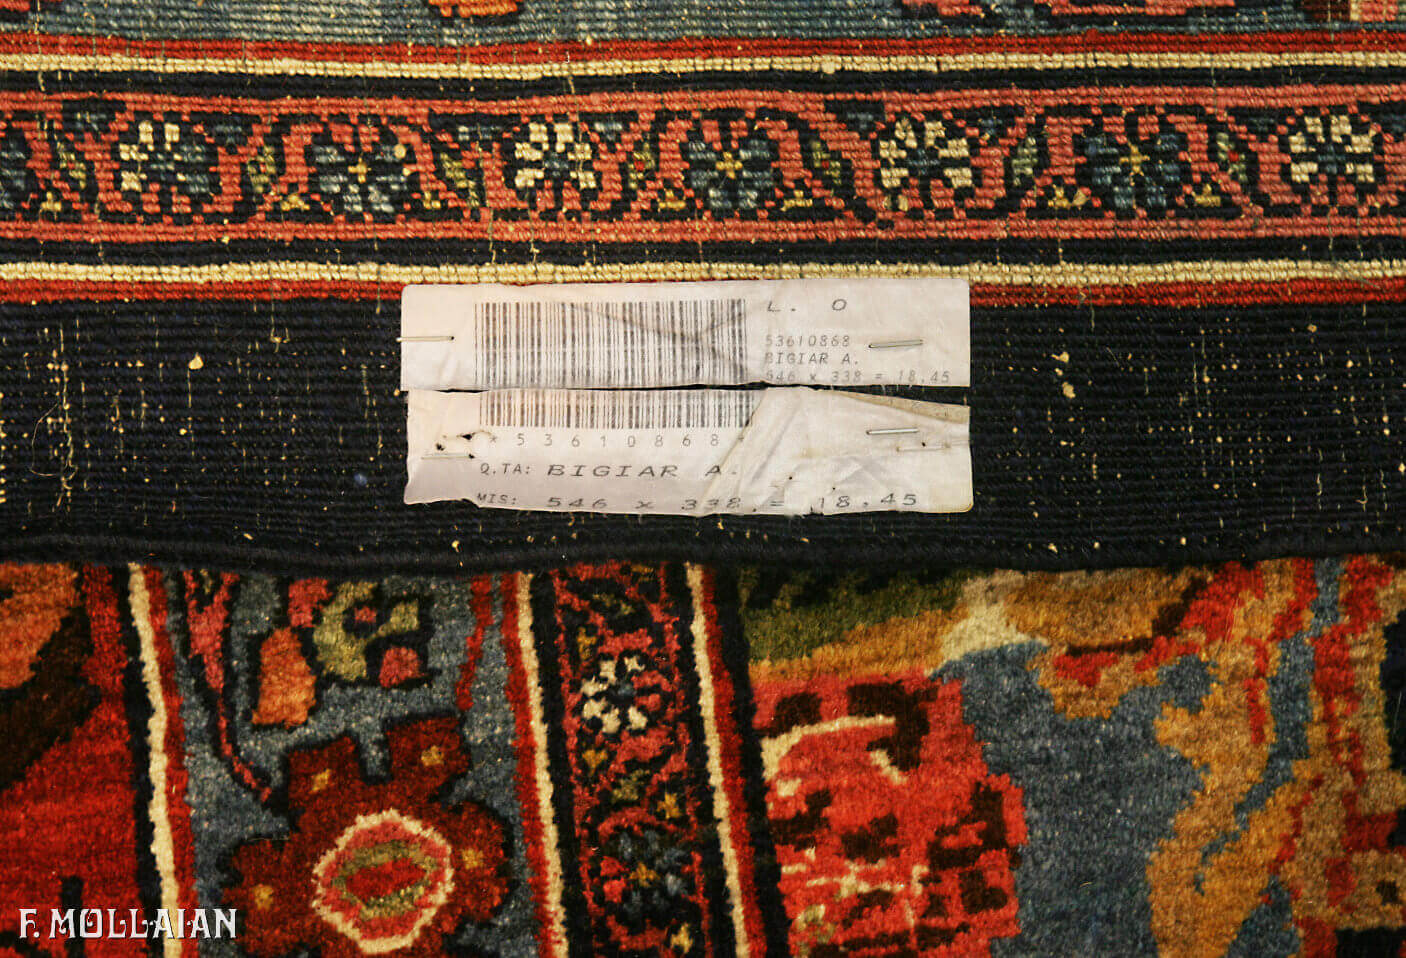 Very Large Antique Persian Bijar (Bidjar) Carpet n°:53610868